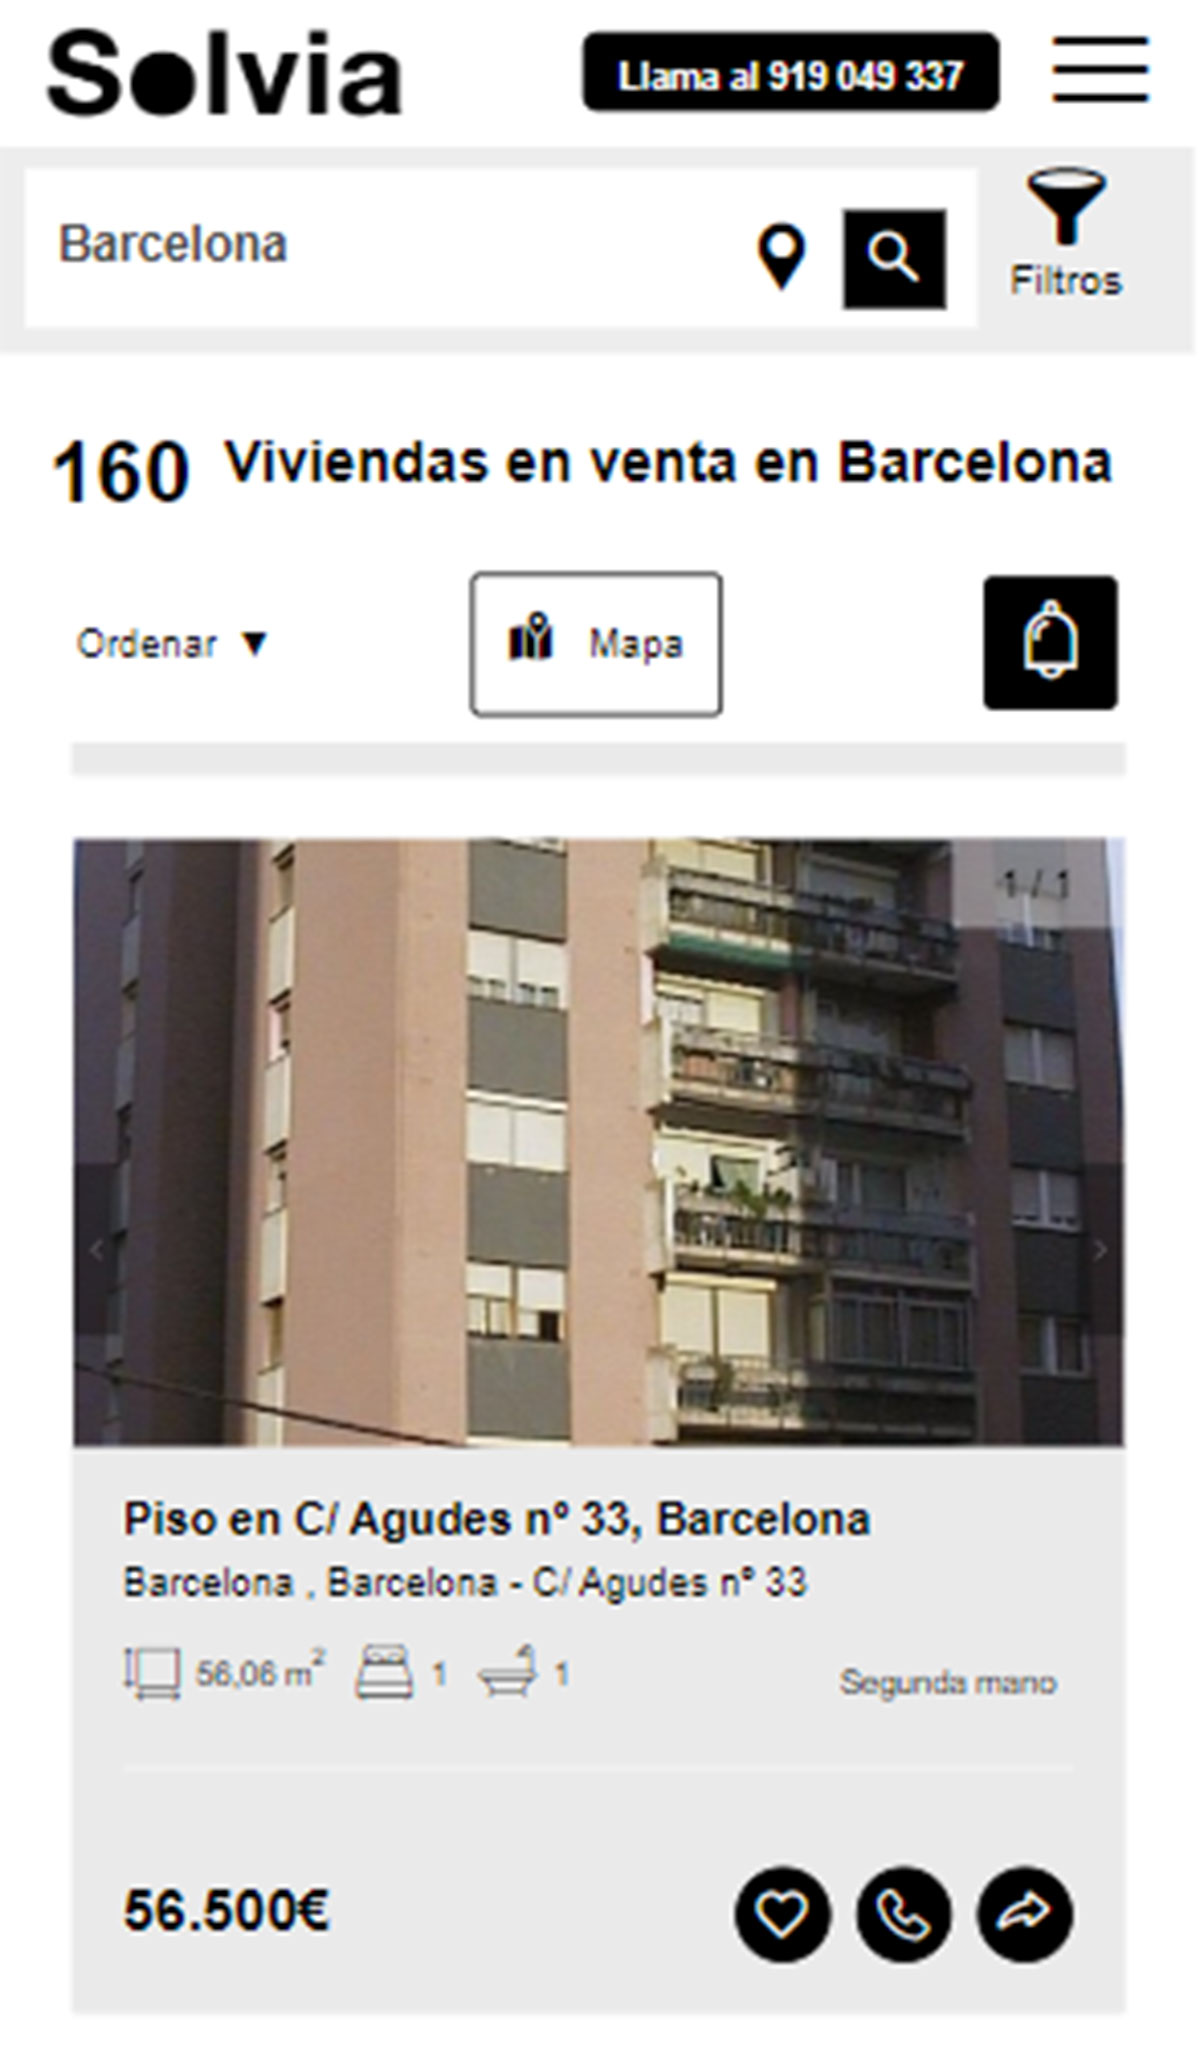 Piso en la ciudad de Barcelona por 56.500 euros